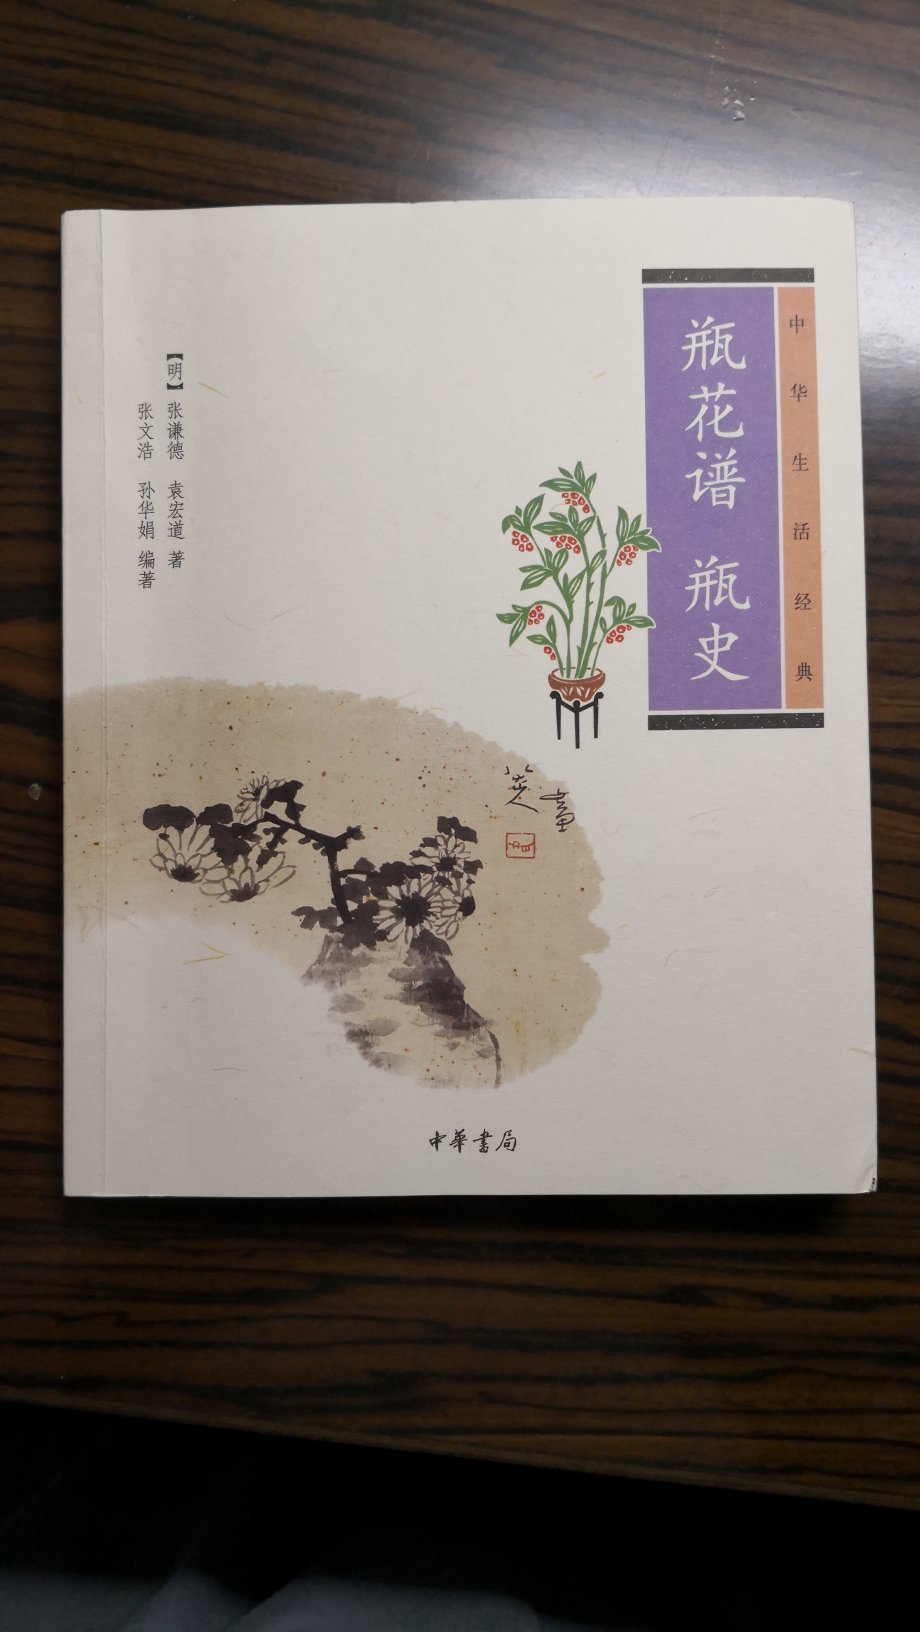 中华书局出版的书质量很好值得购买。